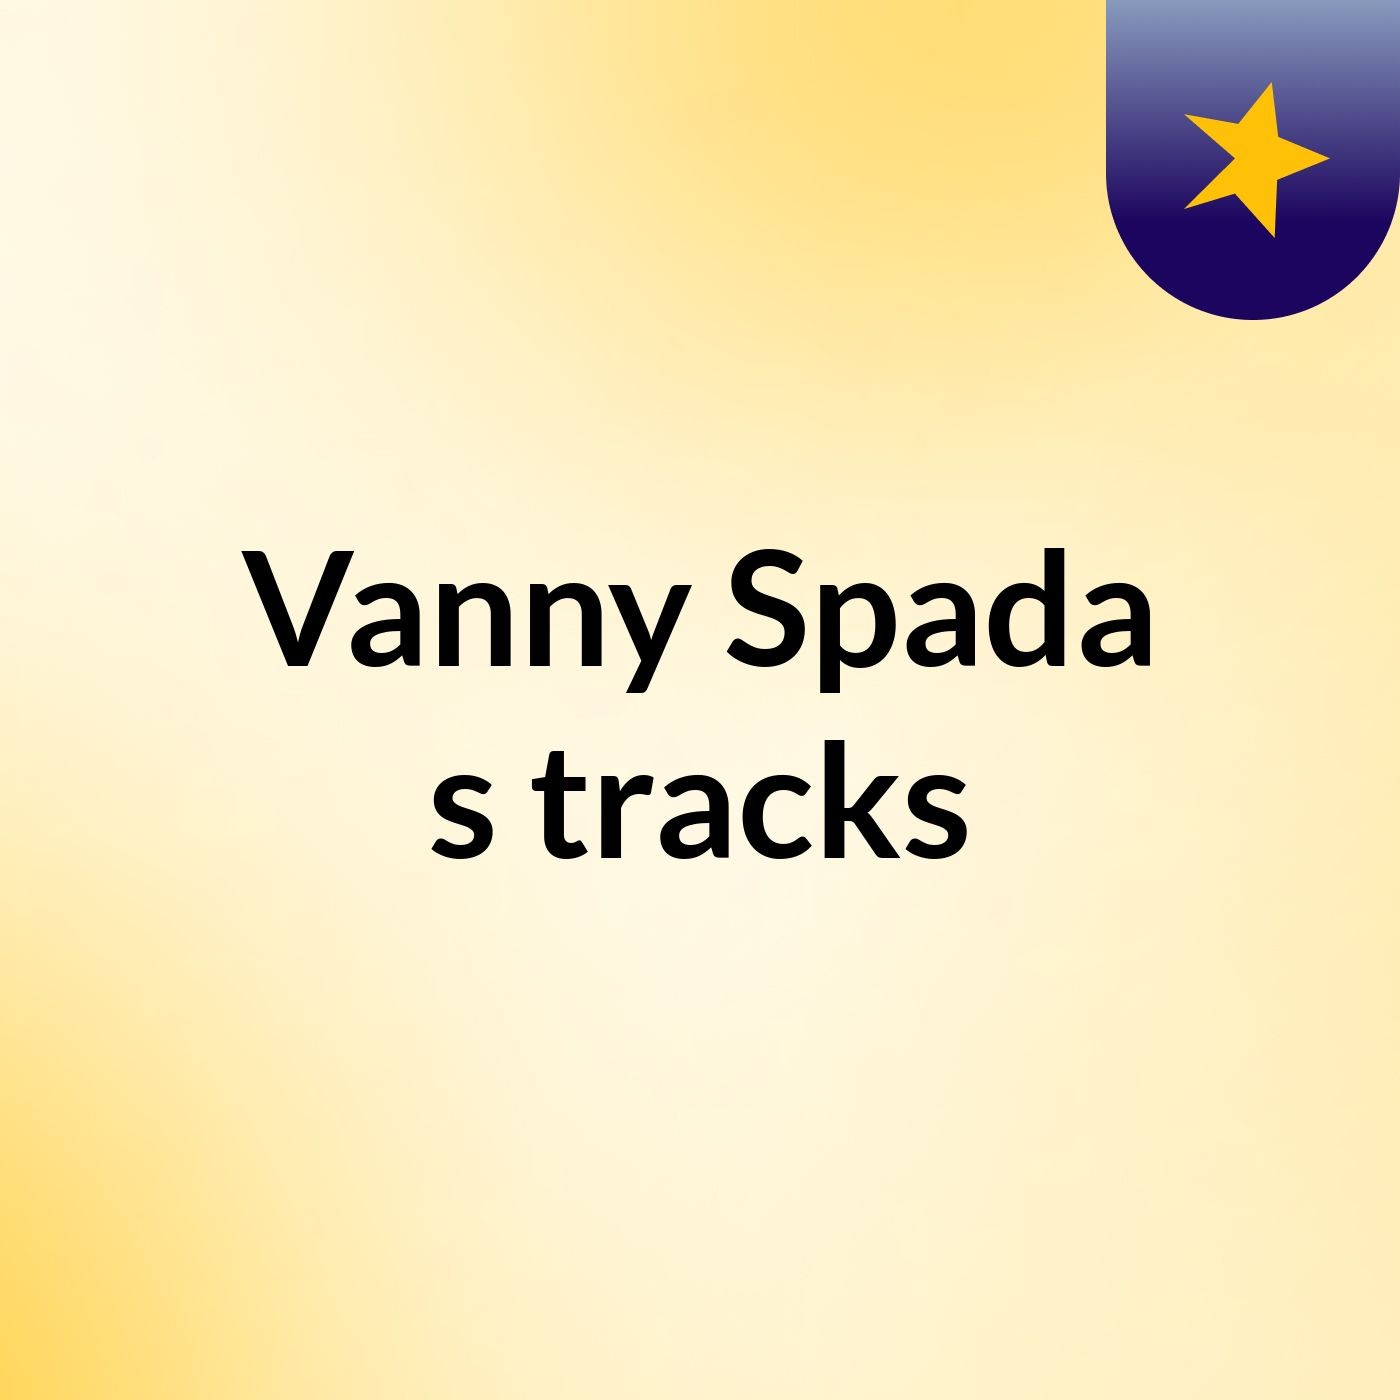 Vanny Spada's tracks